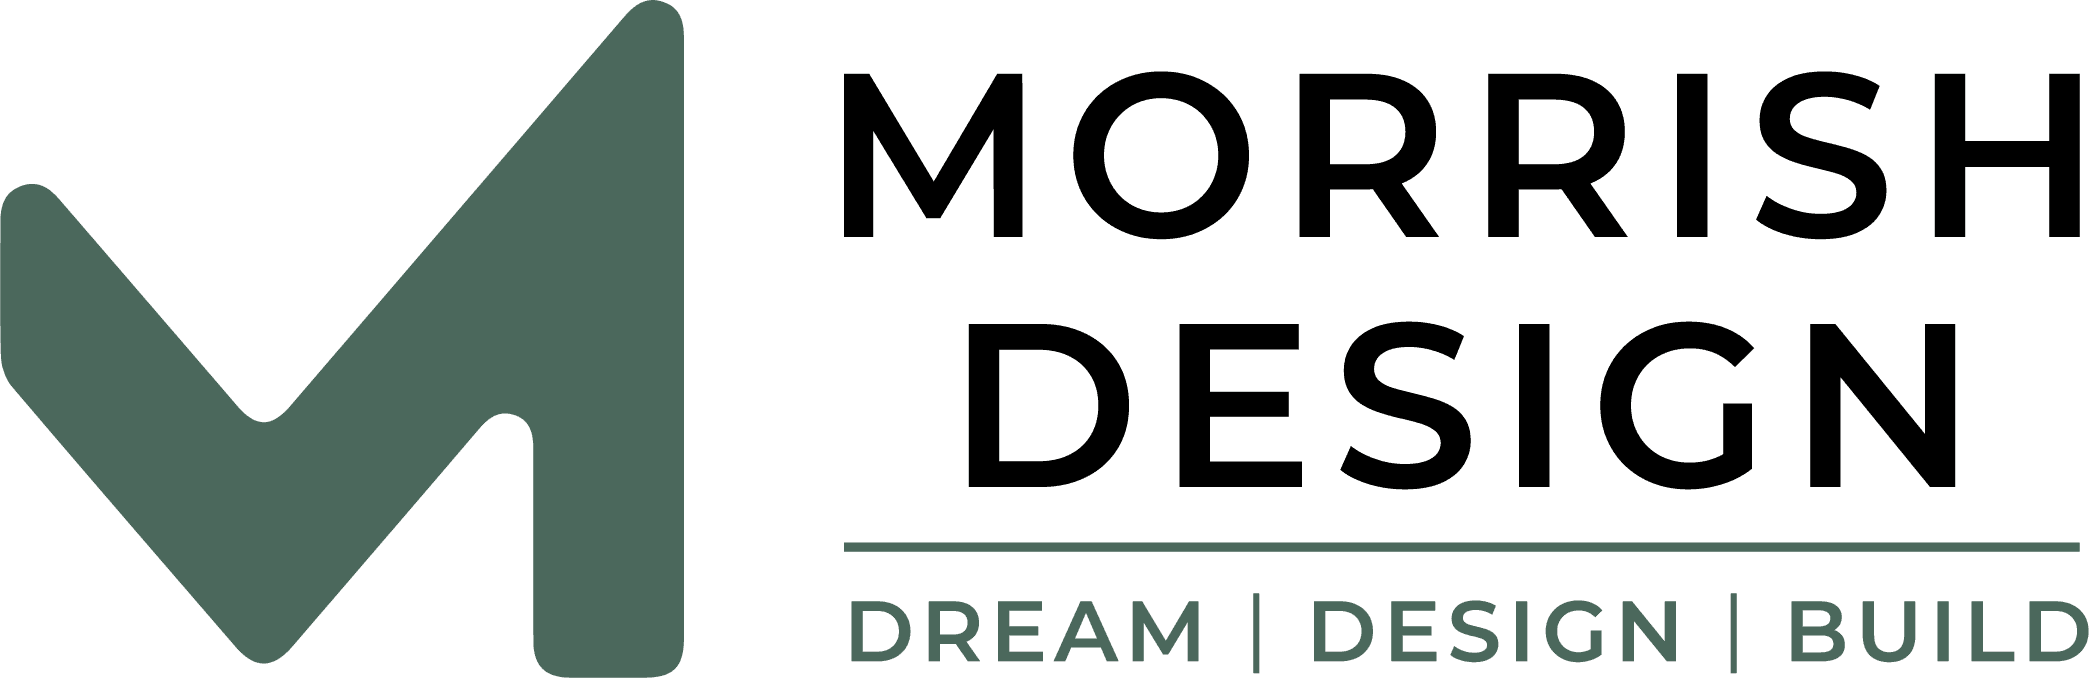 Morrish Design